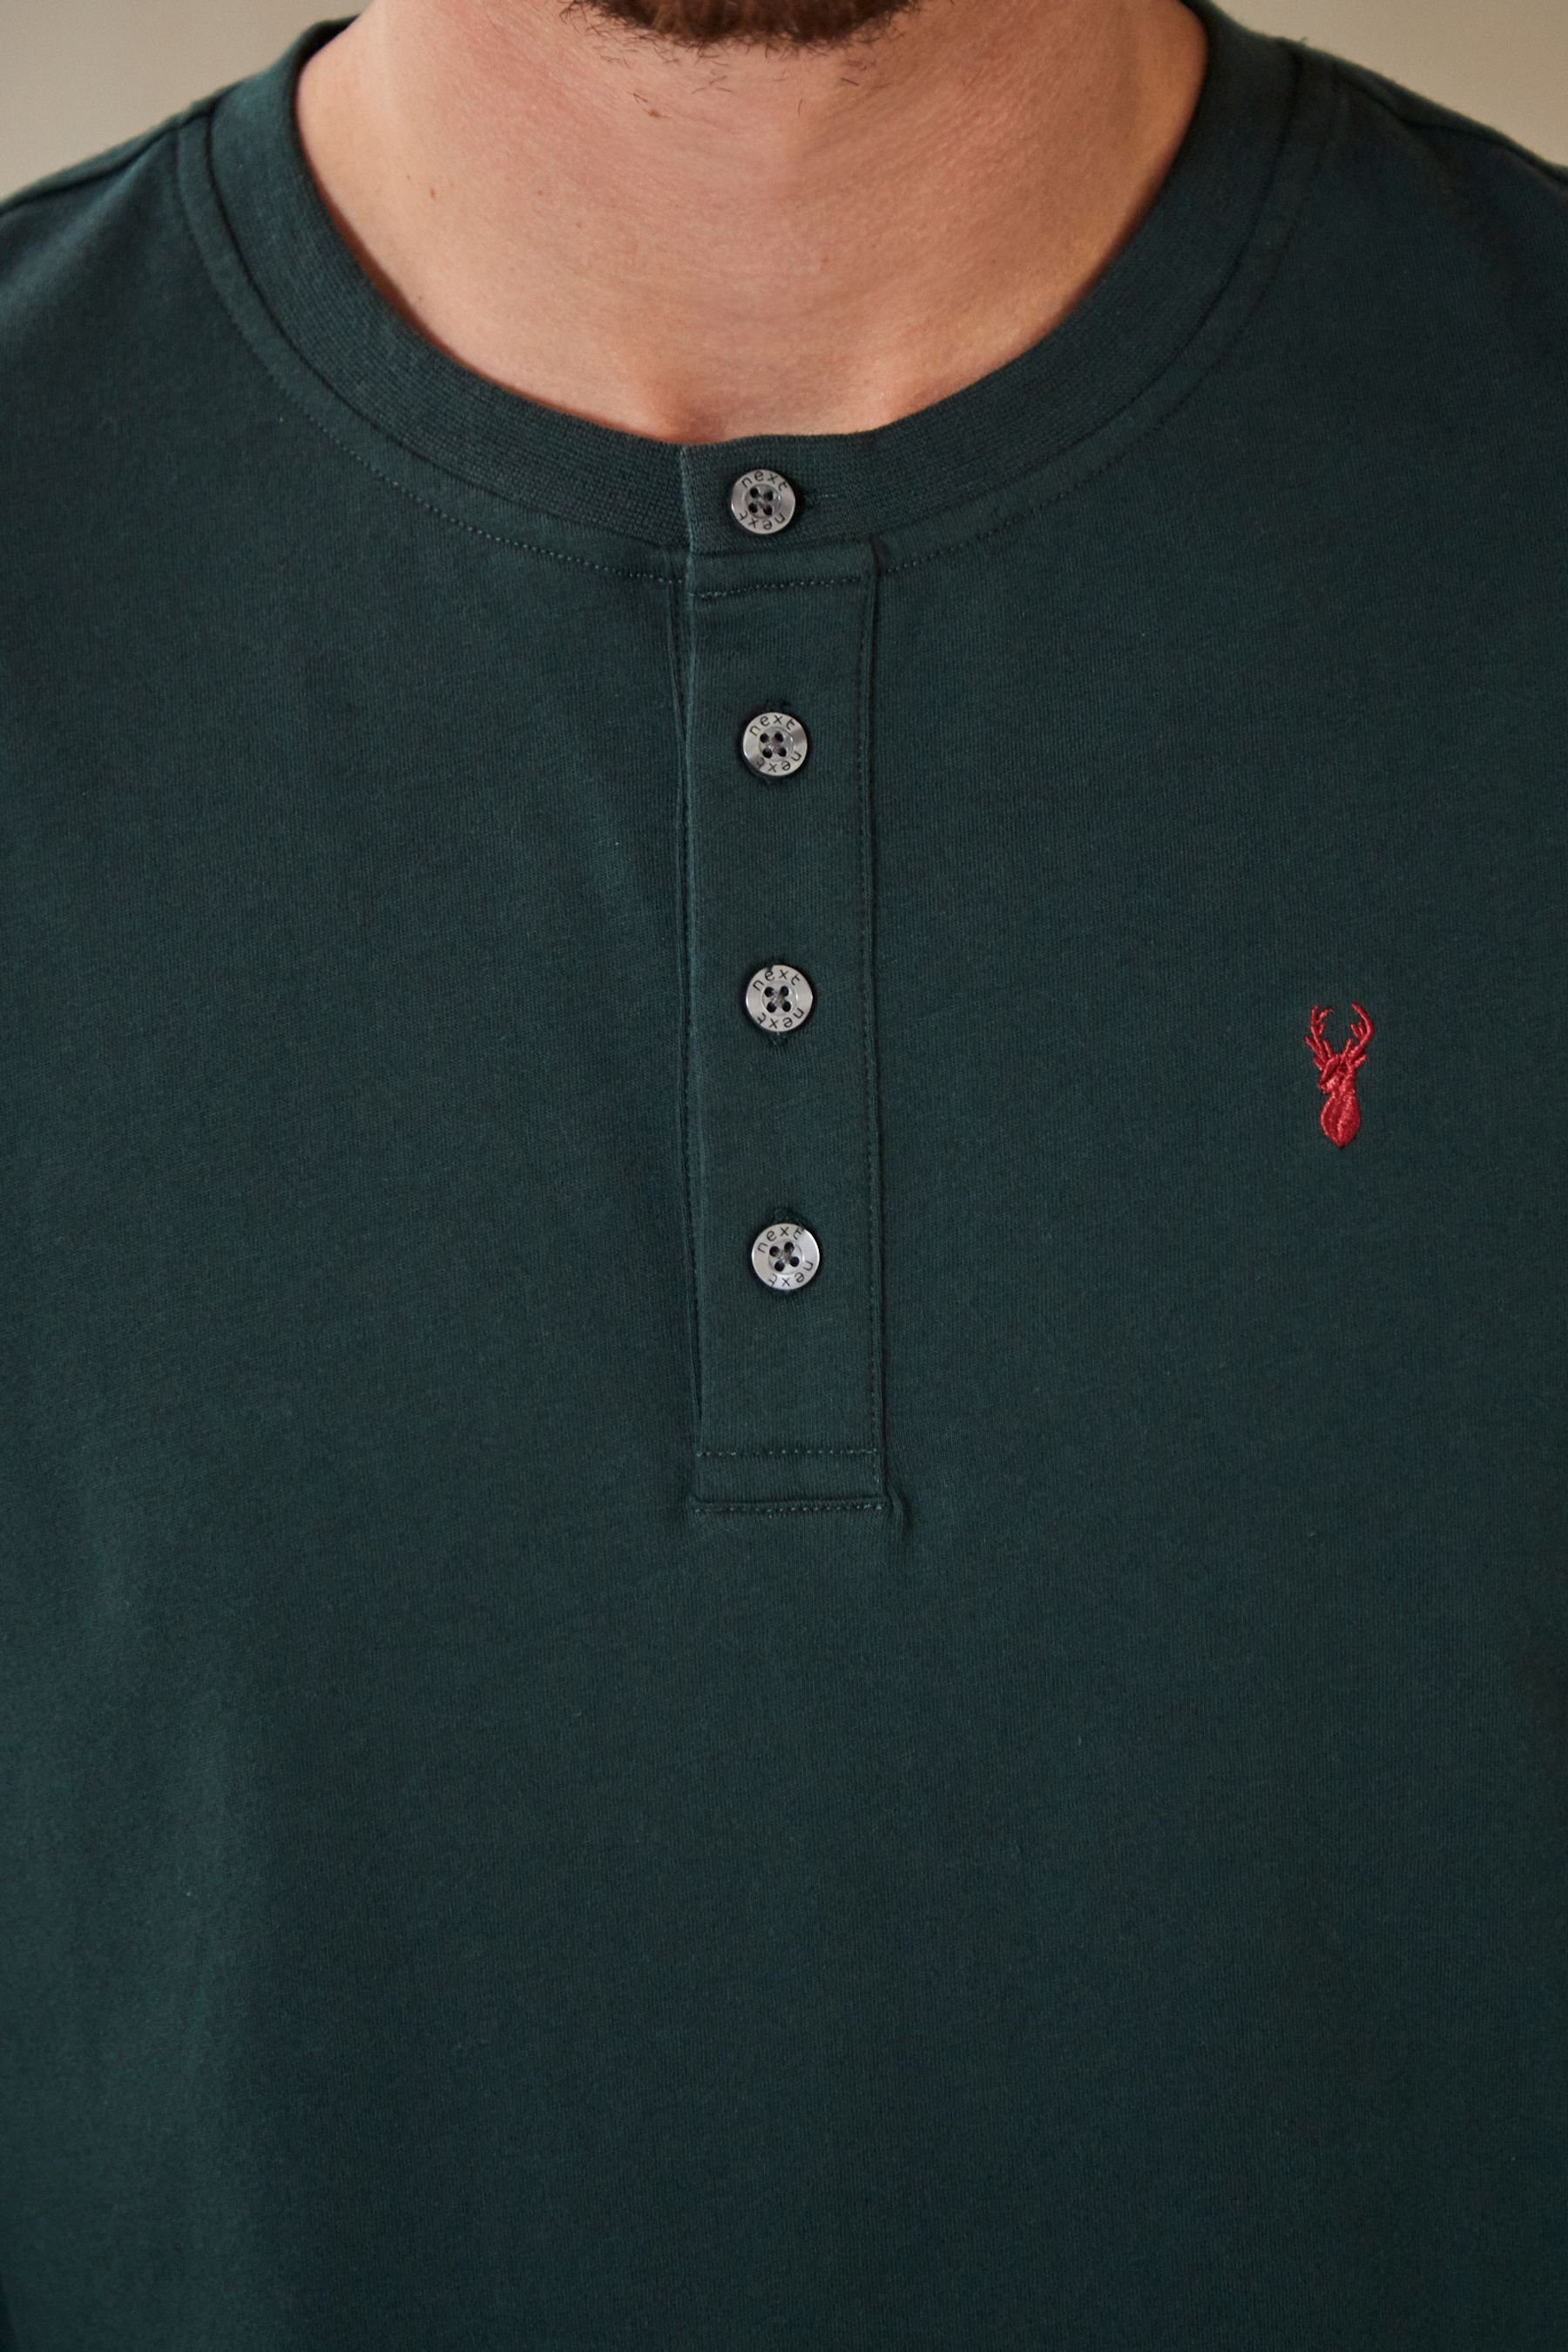 Motionflex Check (2 Bequemer Pyjama tlg) Green/Red Next Schlafanzug